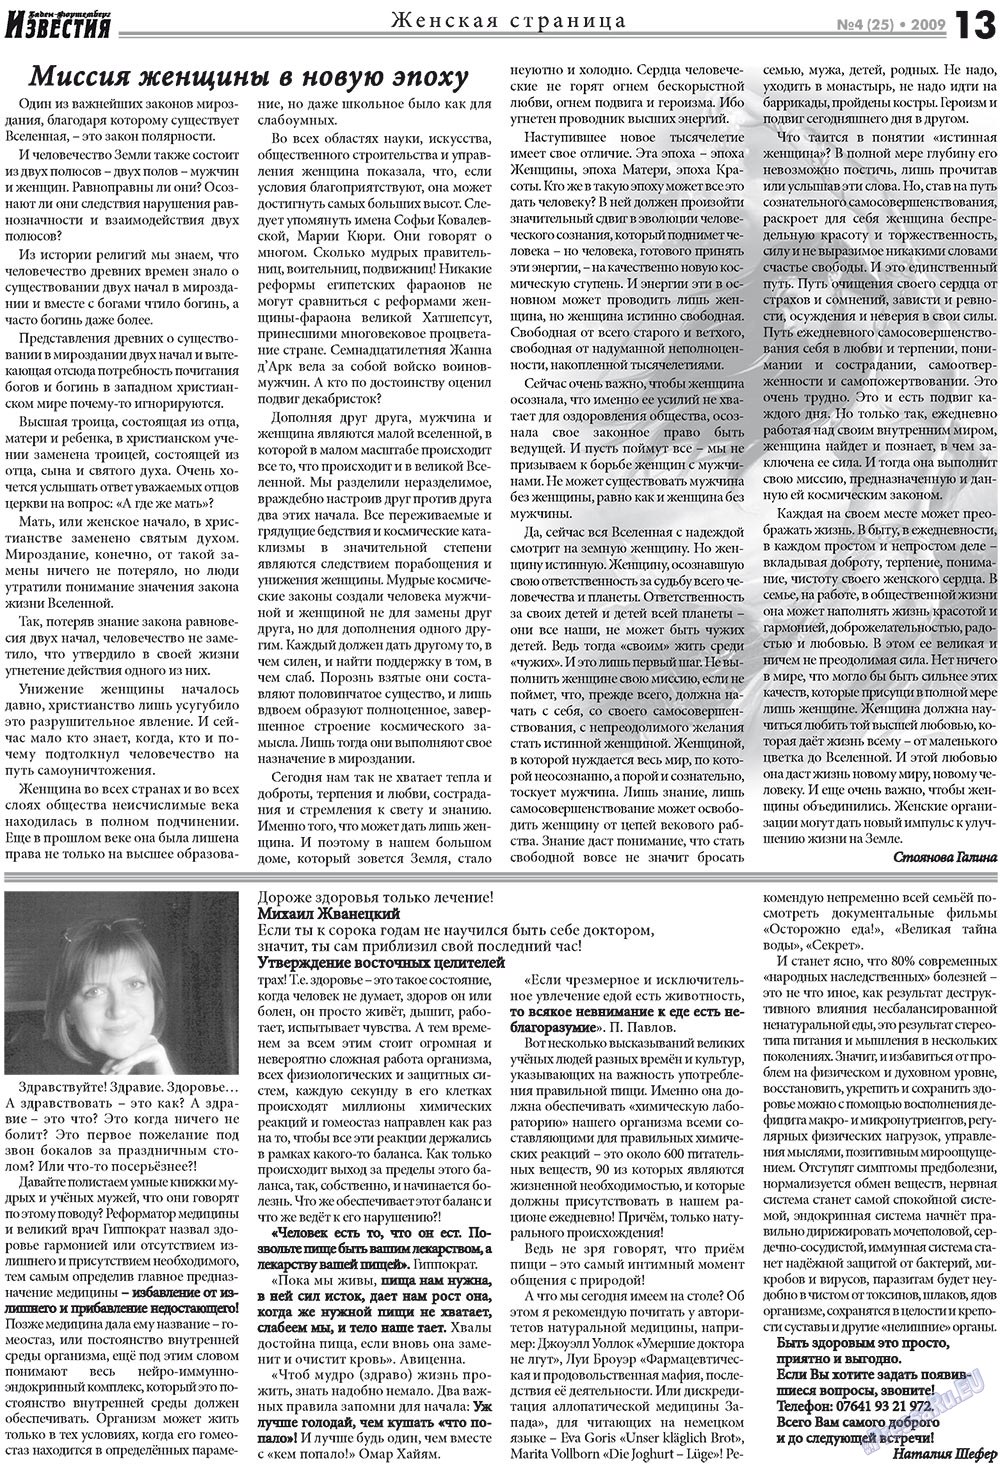 Известия BW, газета. 2009 №4 стр.13